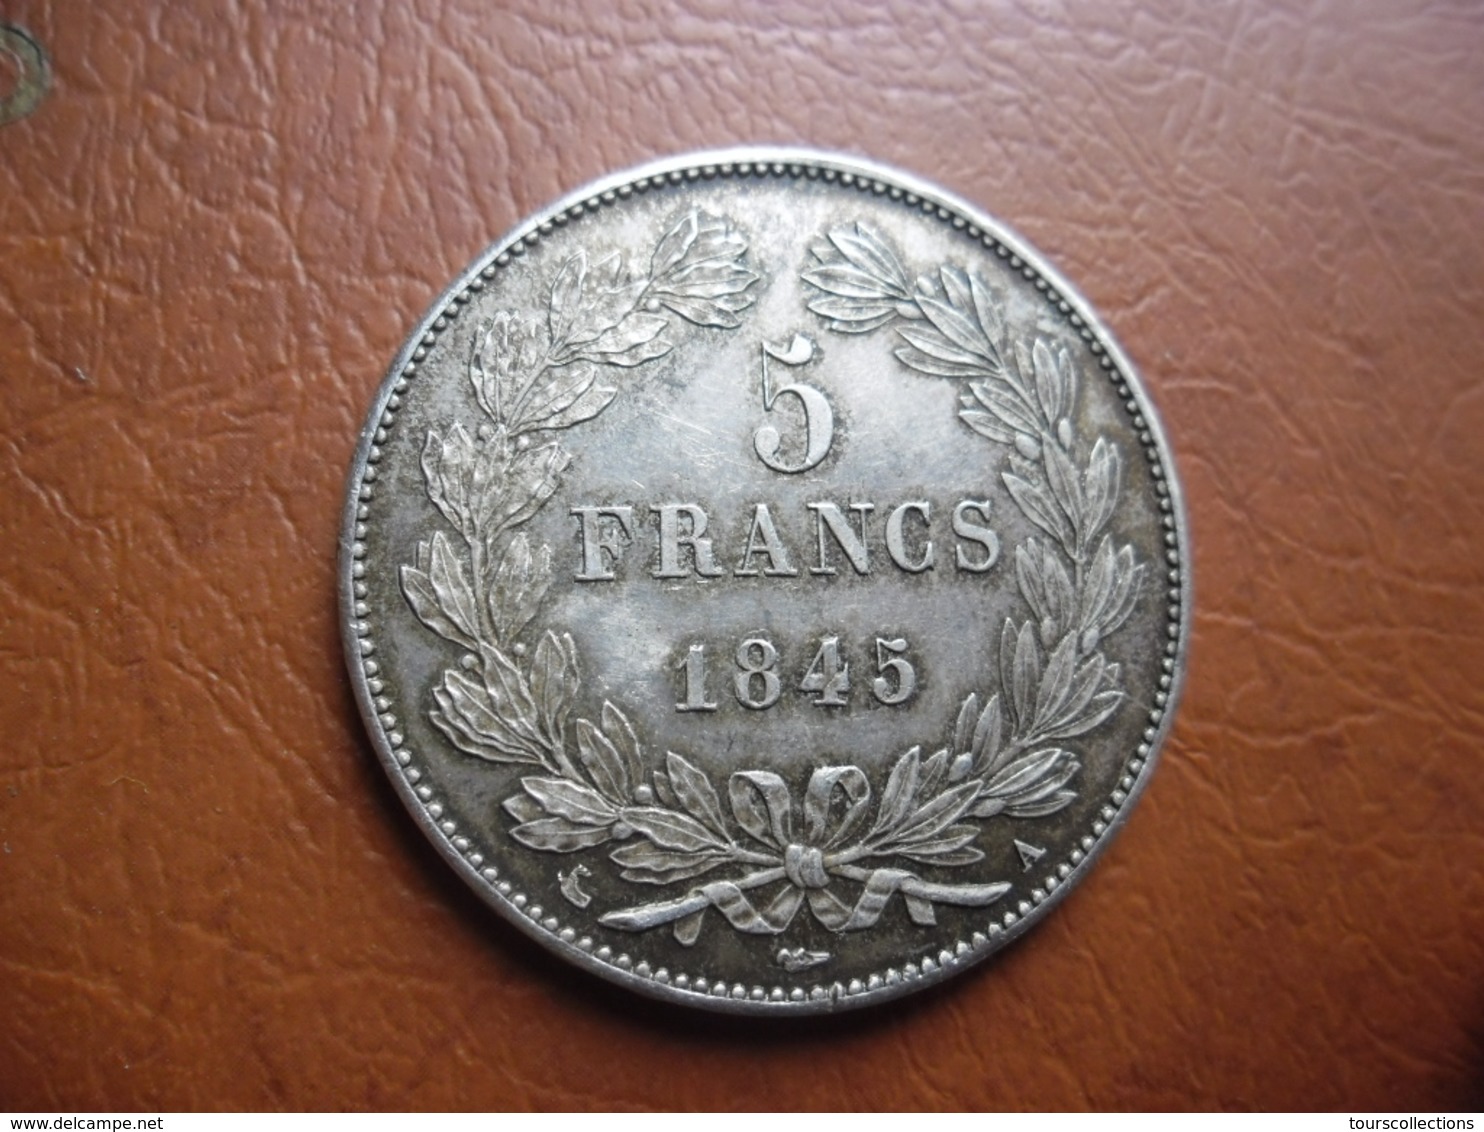 RARE ETAT SUP 5 FRANCS ARGENT 1845 A - ECU ARGENT LOUIS PHILIPPE - Tranche En Relief Dieu Protège La France - Domard - 5 Francs